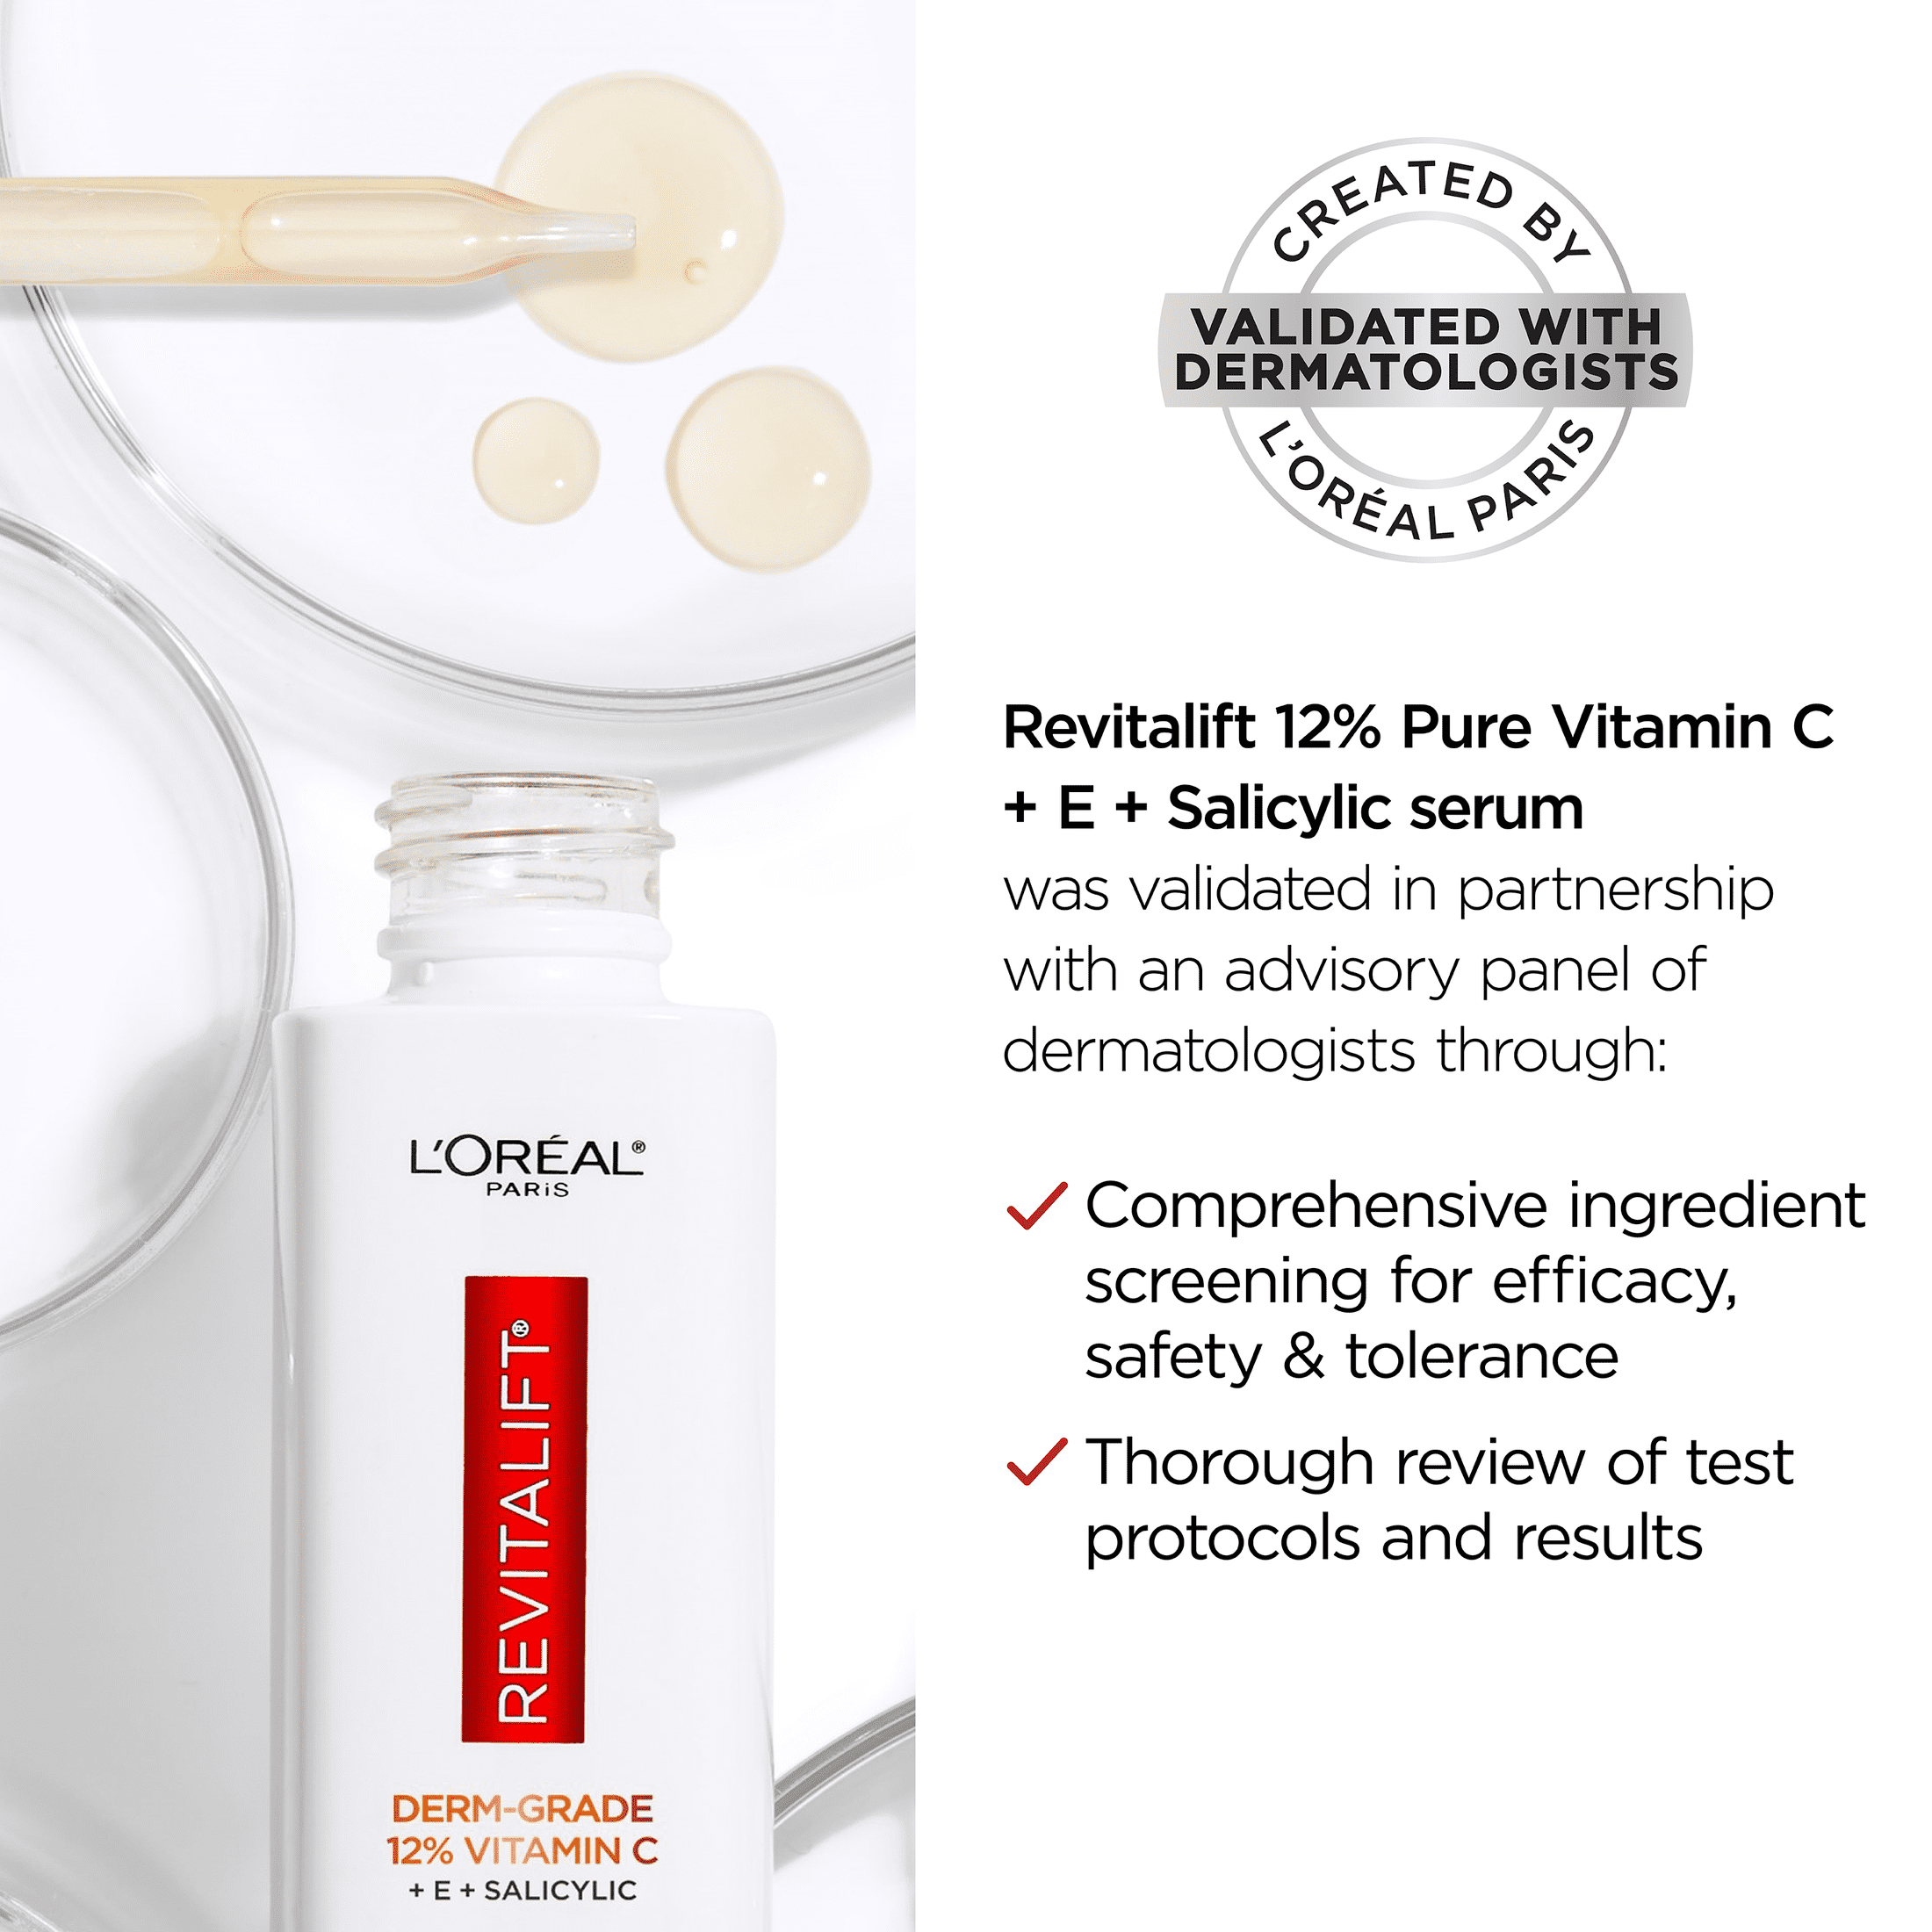 L'Oréal Paris RVL CLINICAL VITAMIN C UV-FLUID - Soin de jour